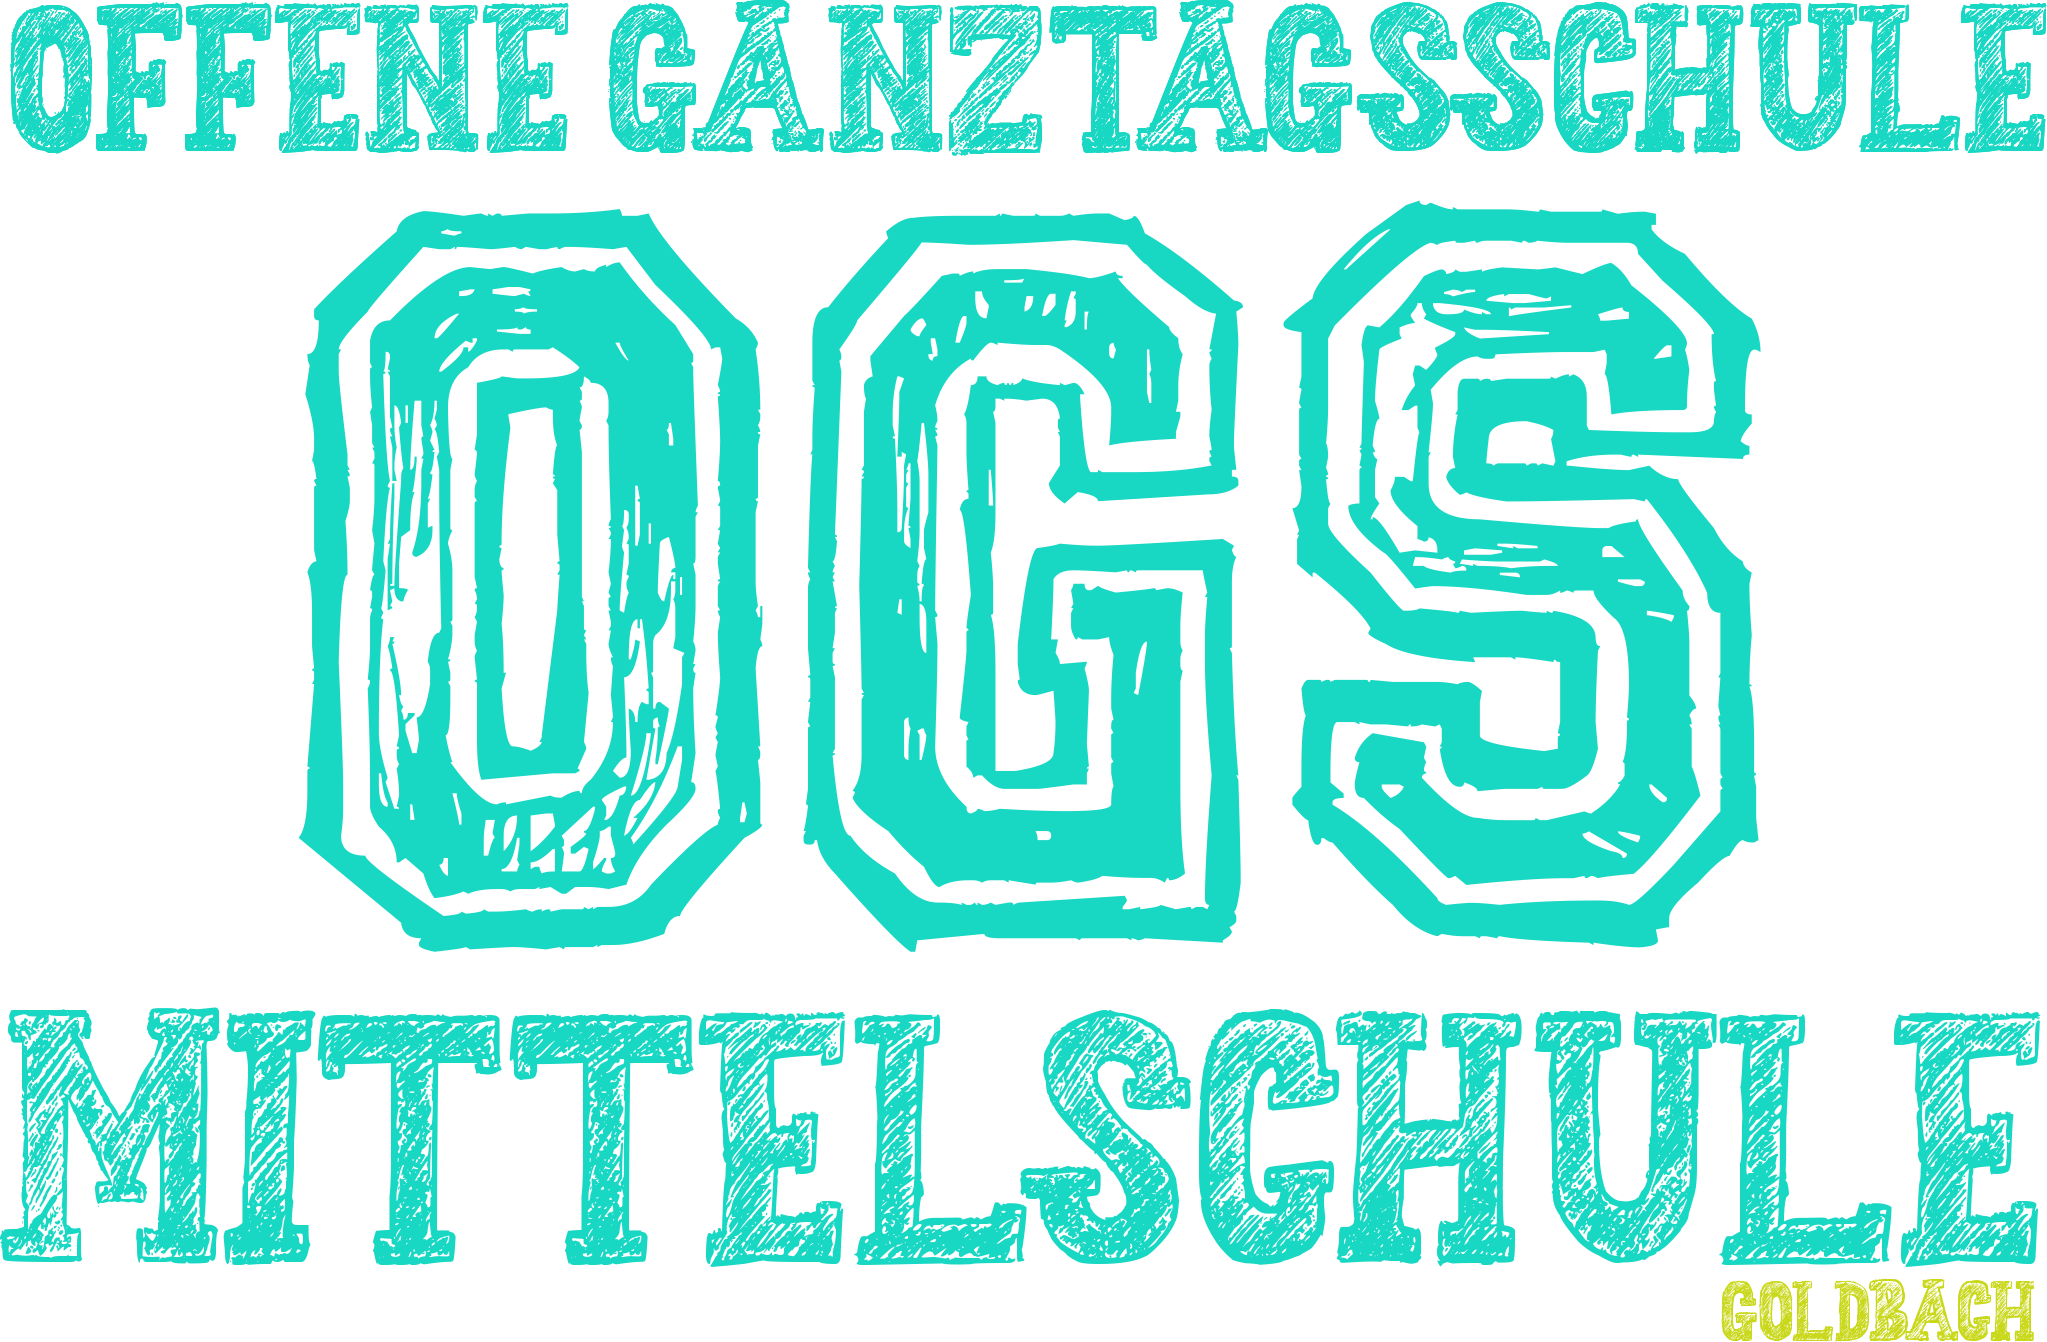 OGS Logo